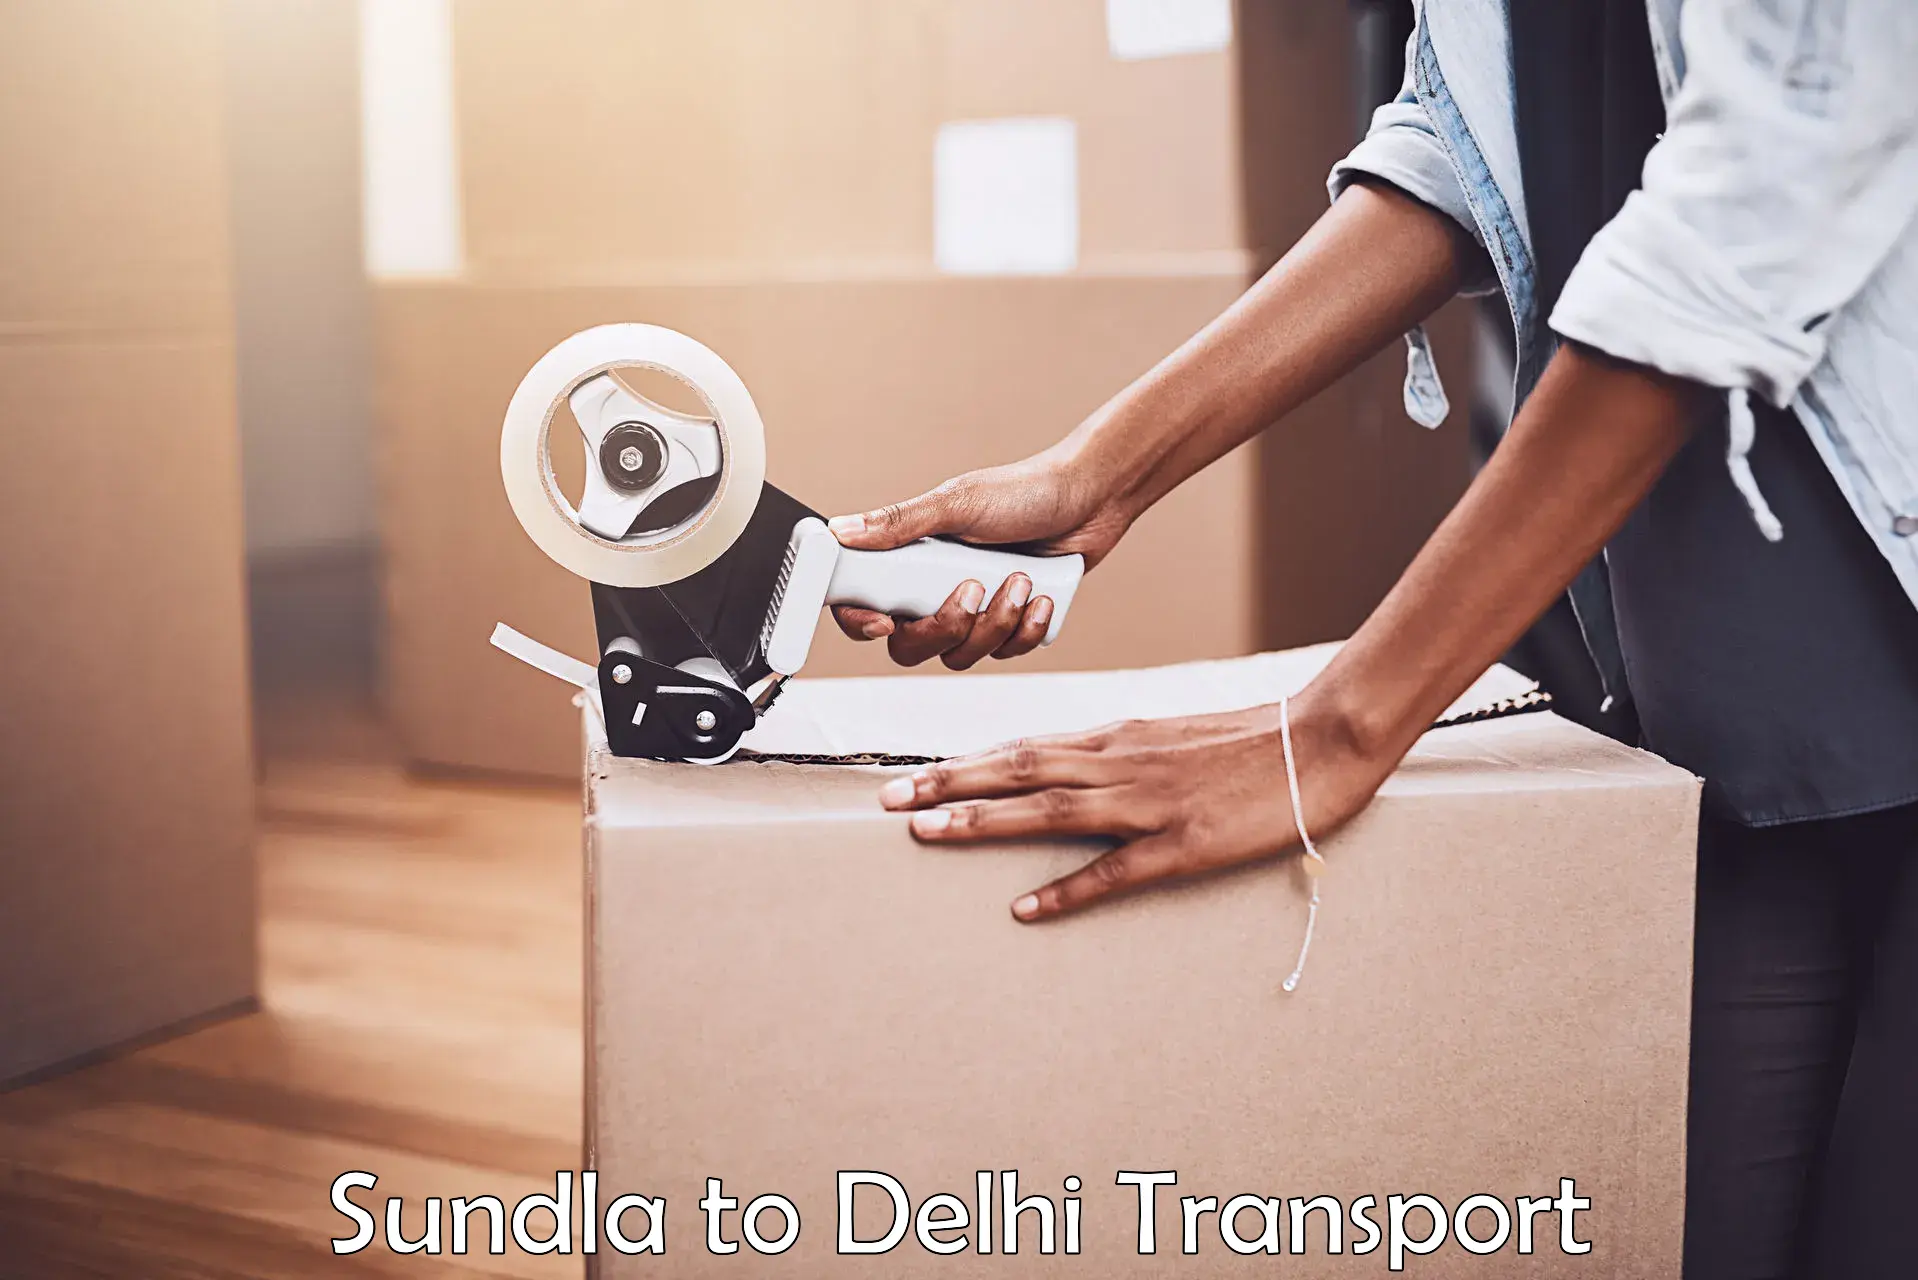 Furniture transport service Sundla to NIT Delhi